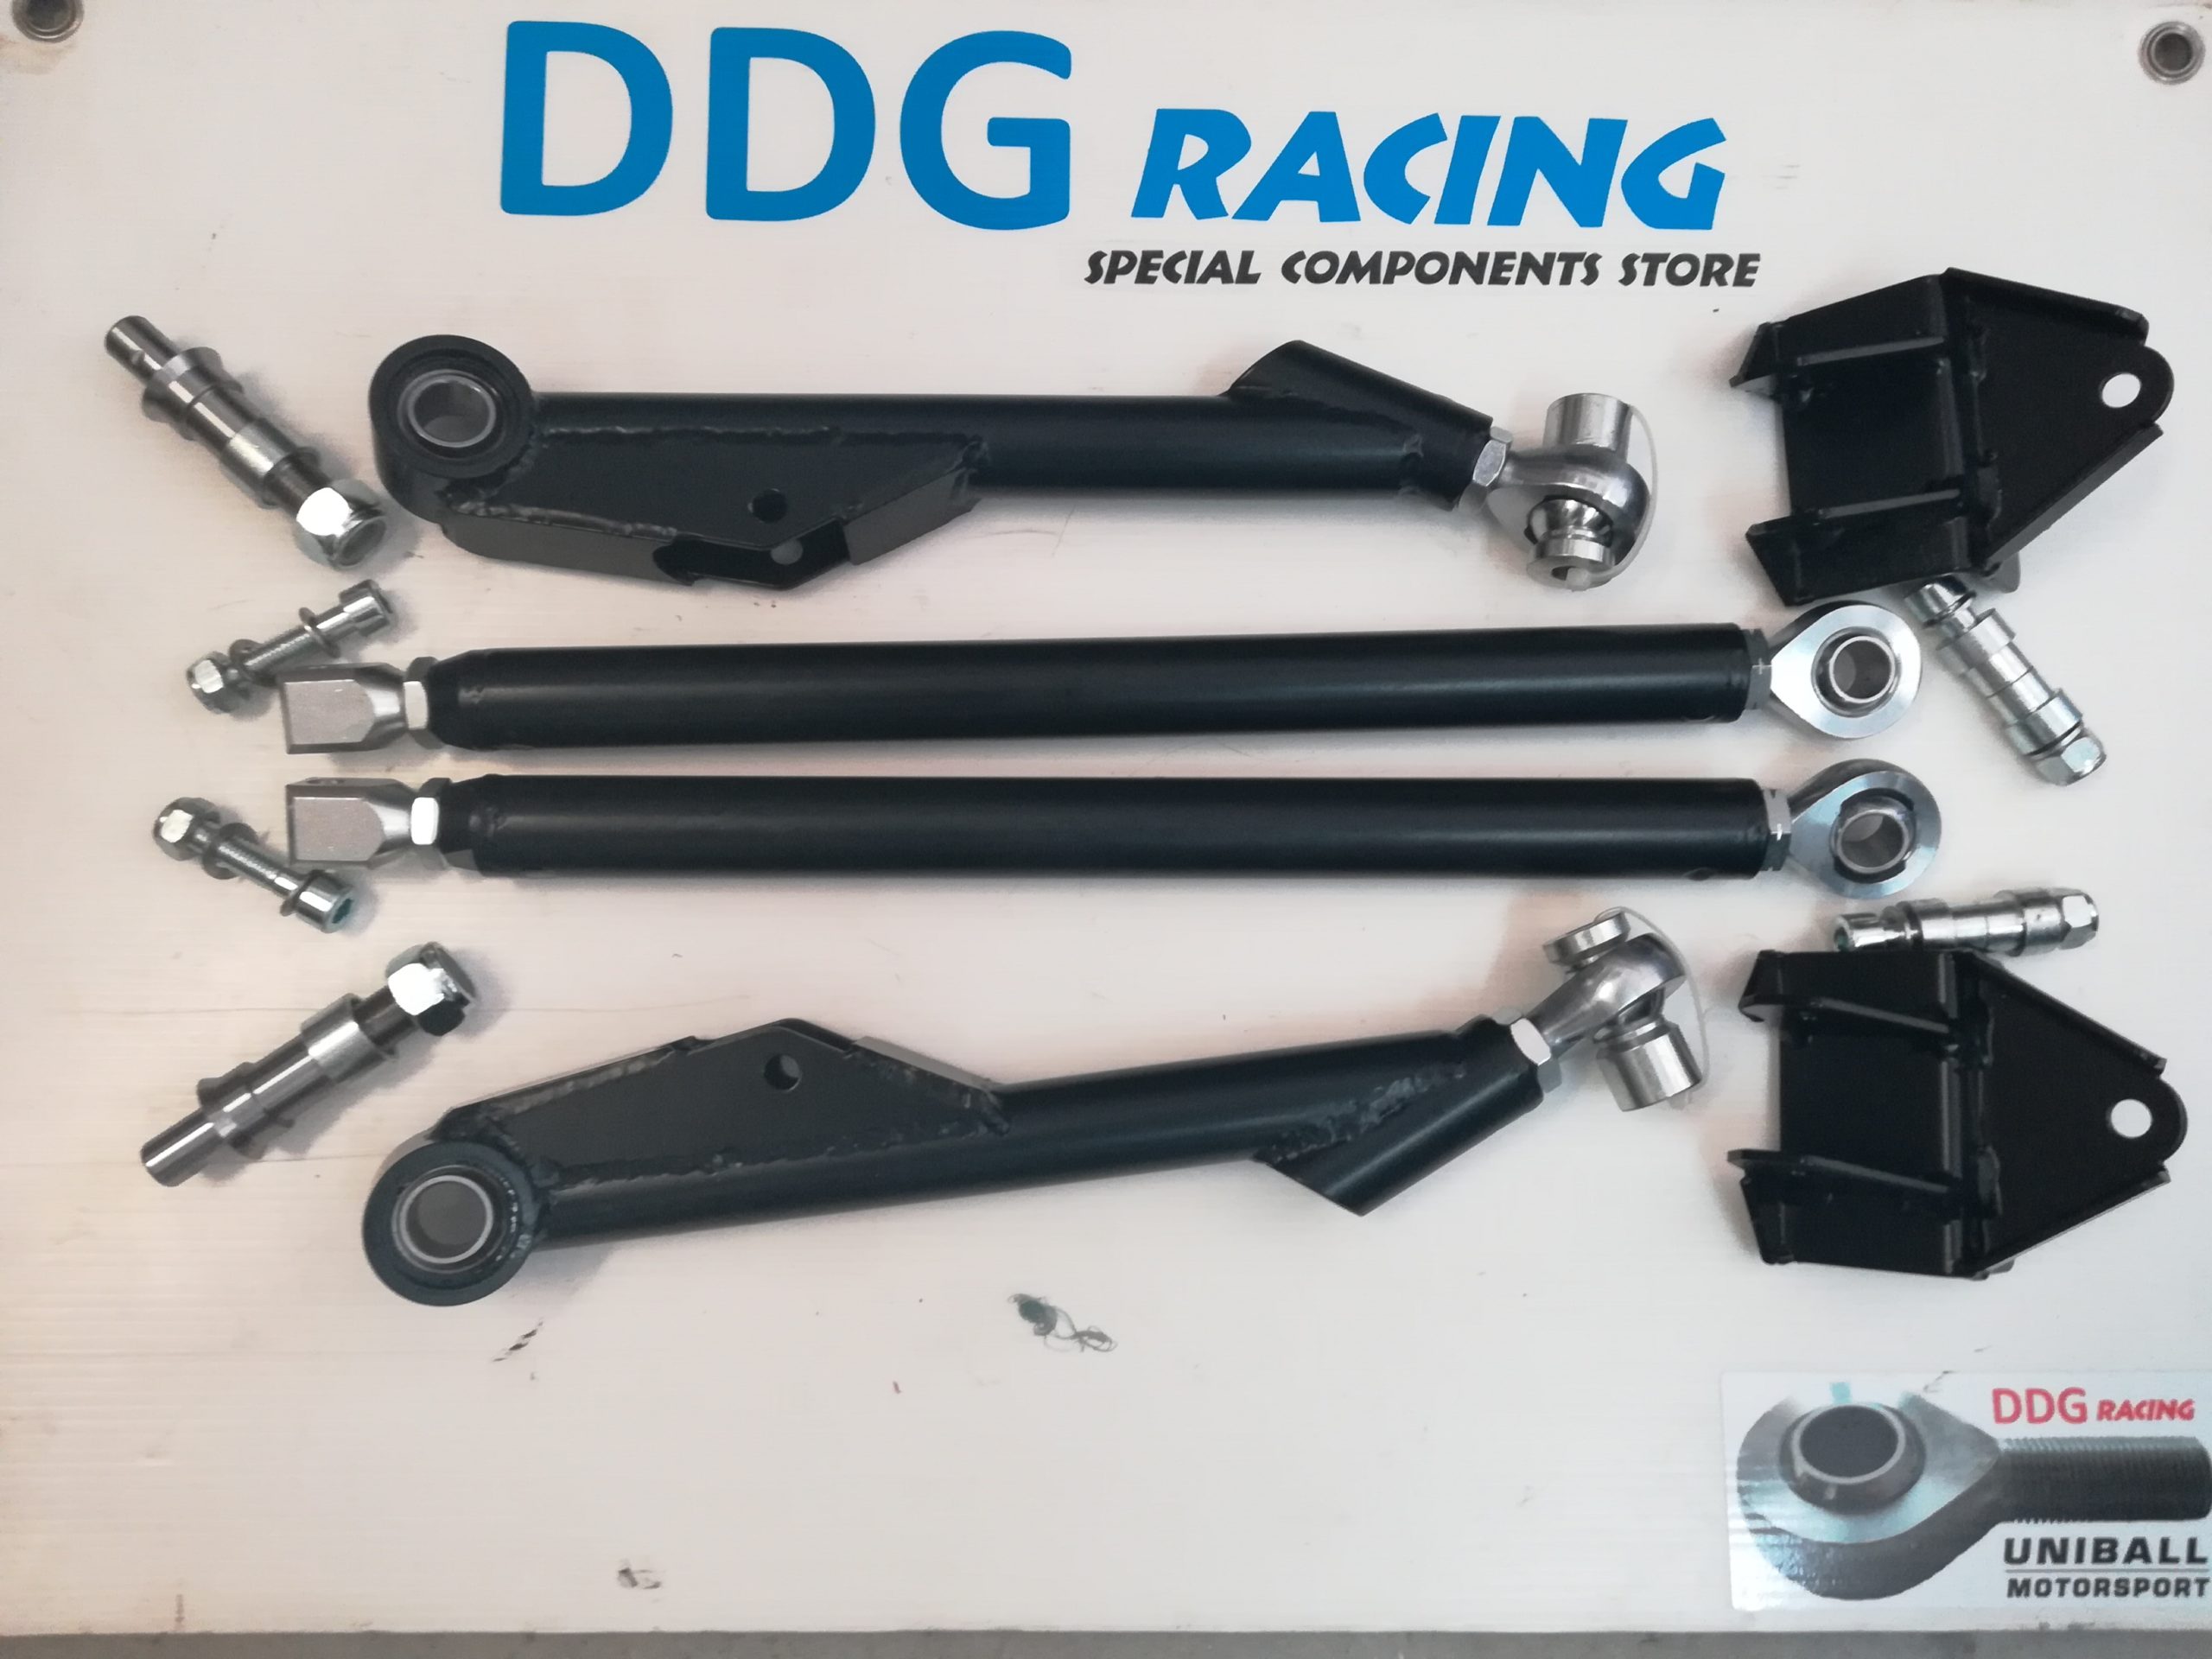 Kit trapezi anteriori tubolari su uniball per Opel Corsa – Tirante  incidenza con doppia regolazione – DDG Racing Components